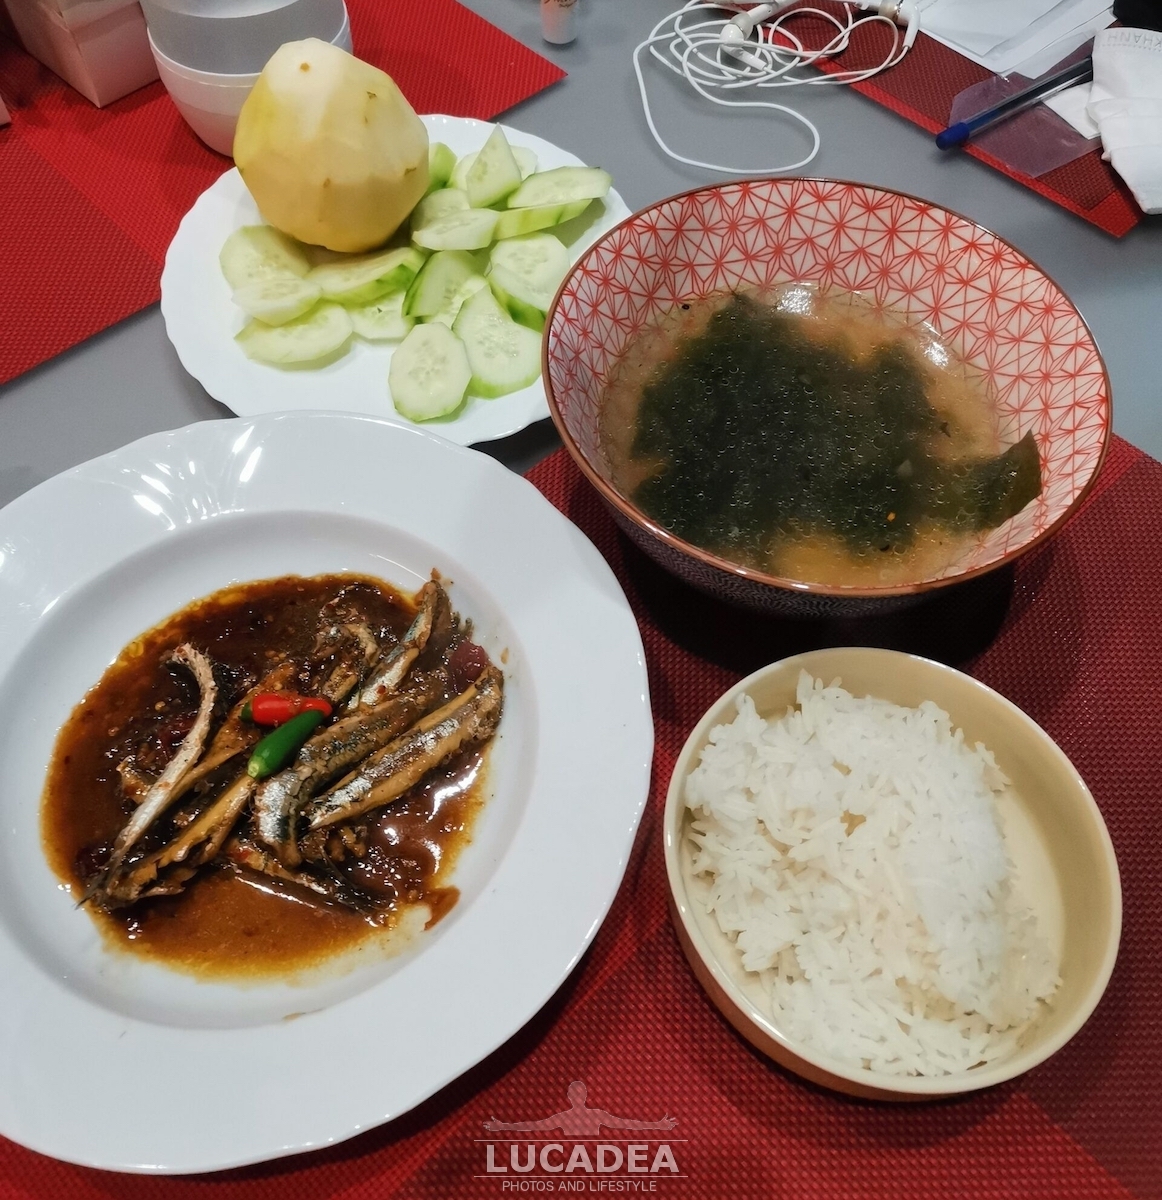 Ricetta vietnamita: alici stufate e piccanti